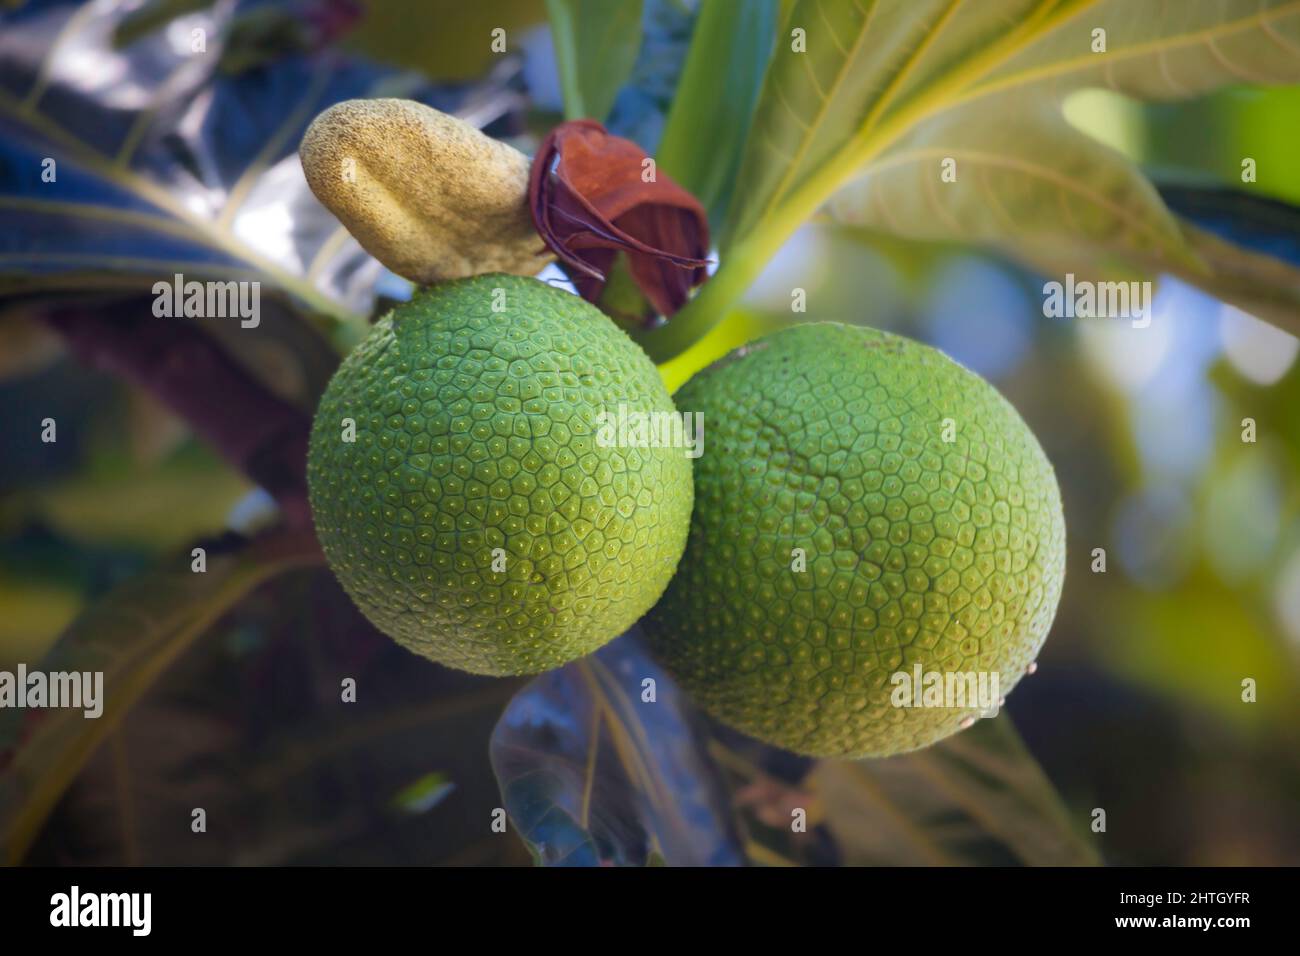 Brotfrucht-Baum, Artocarpus altilis, mit prallen grünen Früchten und seinen unverwechselbaren Blättern. Diese Pflanze ist der einheimischen hawaiianischen Kultur heilig und bekannt Stockfoto